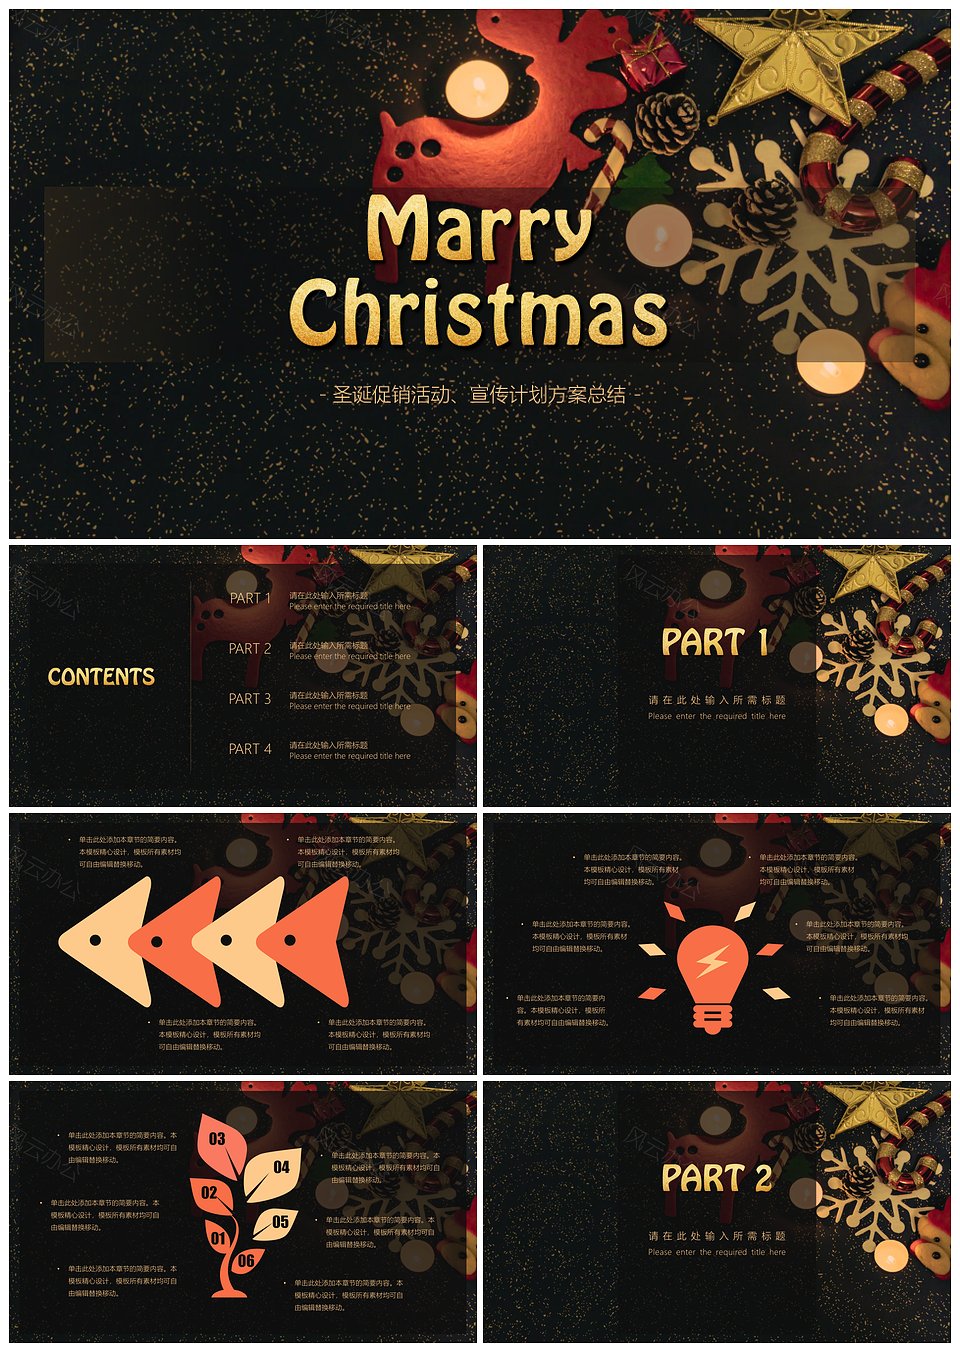 圣诞节活动策划公司活动演示PPT模板下载